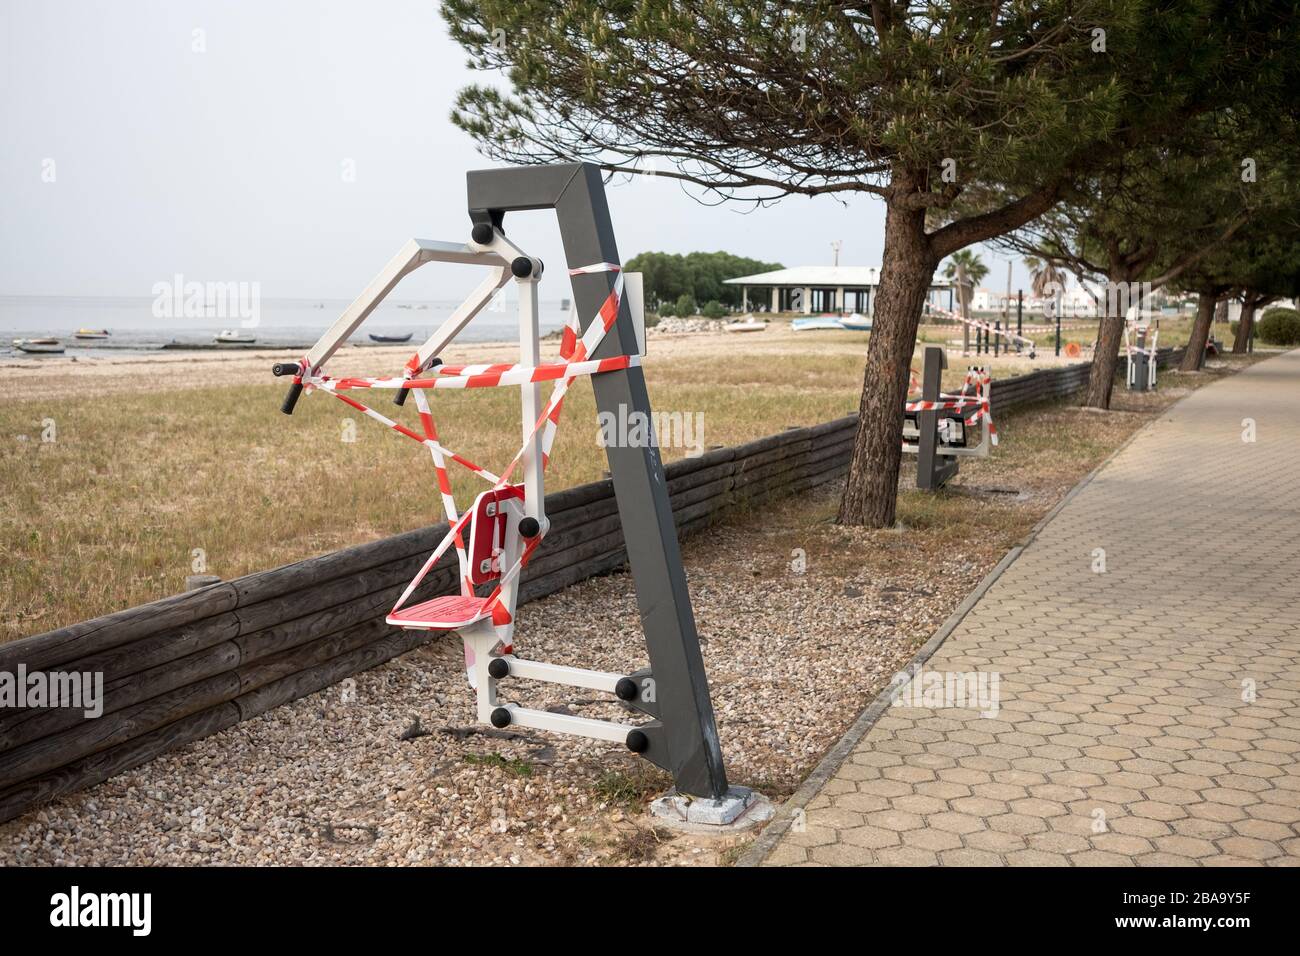 Ruban d'avertissement rouge et blanc marquant l'équipement de gym extérieur en raison de l'épidémie de Coronavirus, à Alcochete, un village près de Lisbonne, Portugal. Banque D'Images